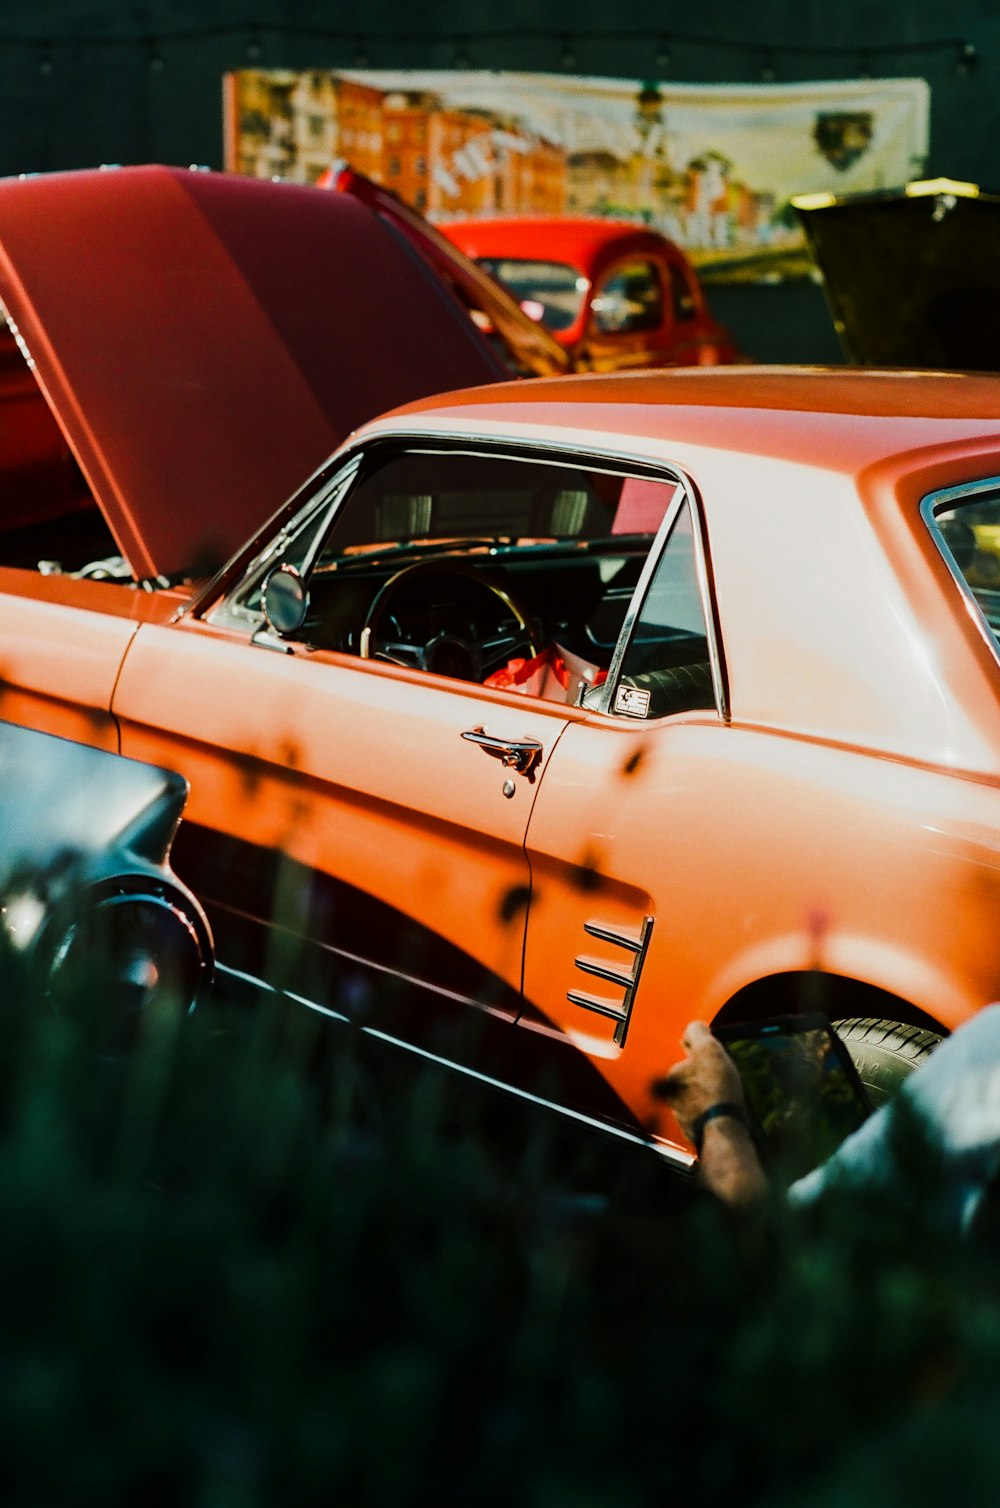 Un coche naranja aparcado junto a otros coches antiguos